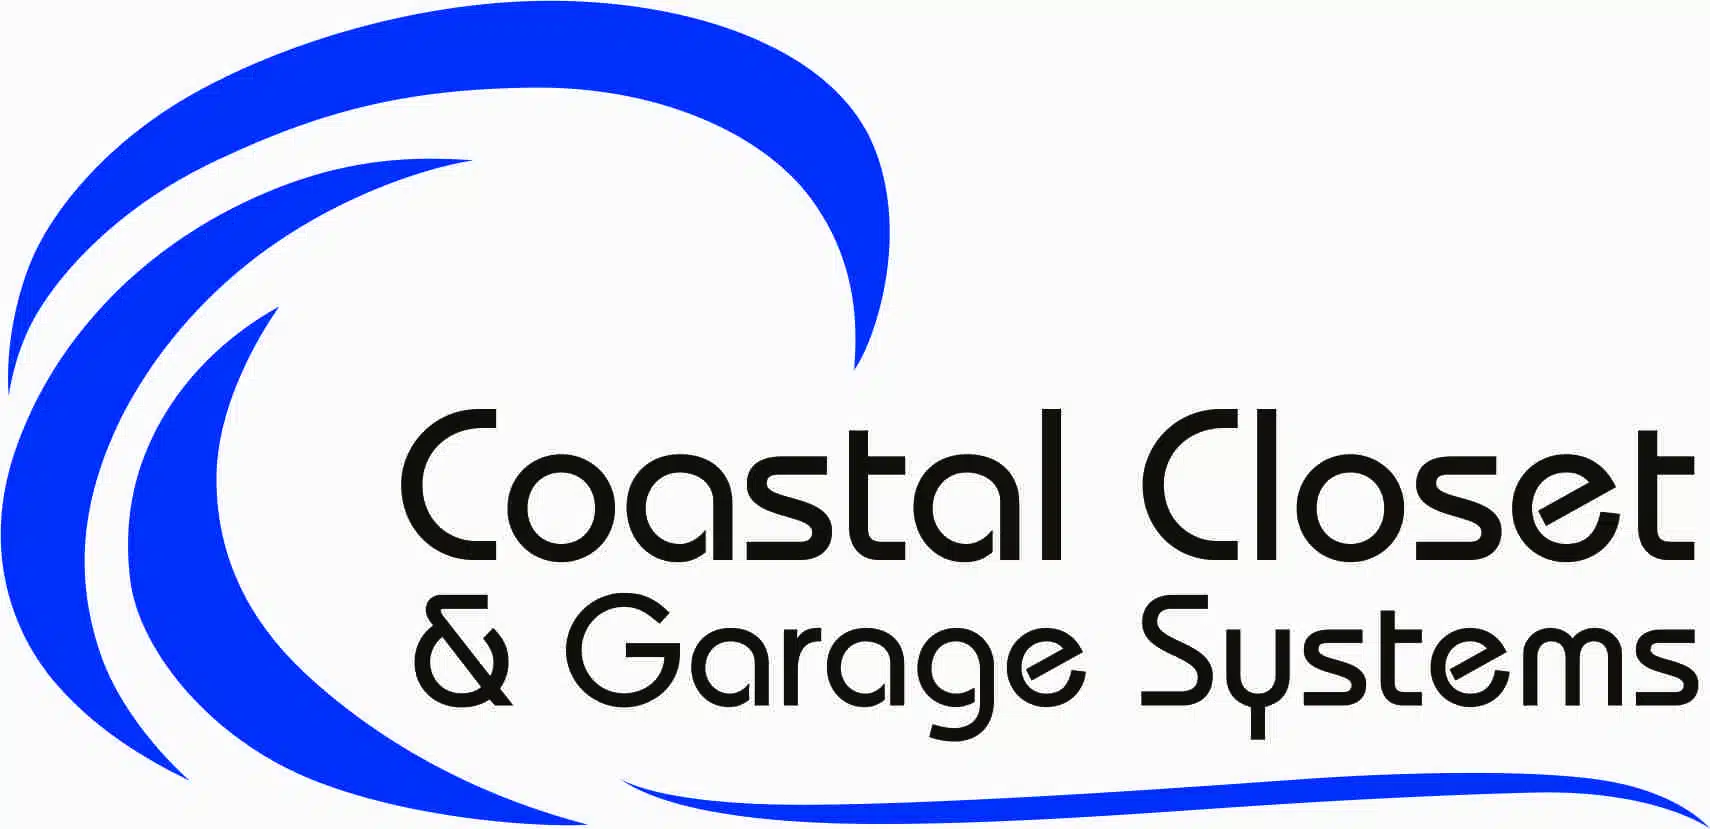 Logo of New Coastal Closet brand